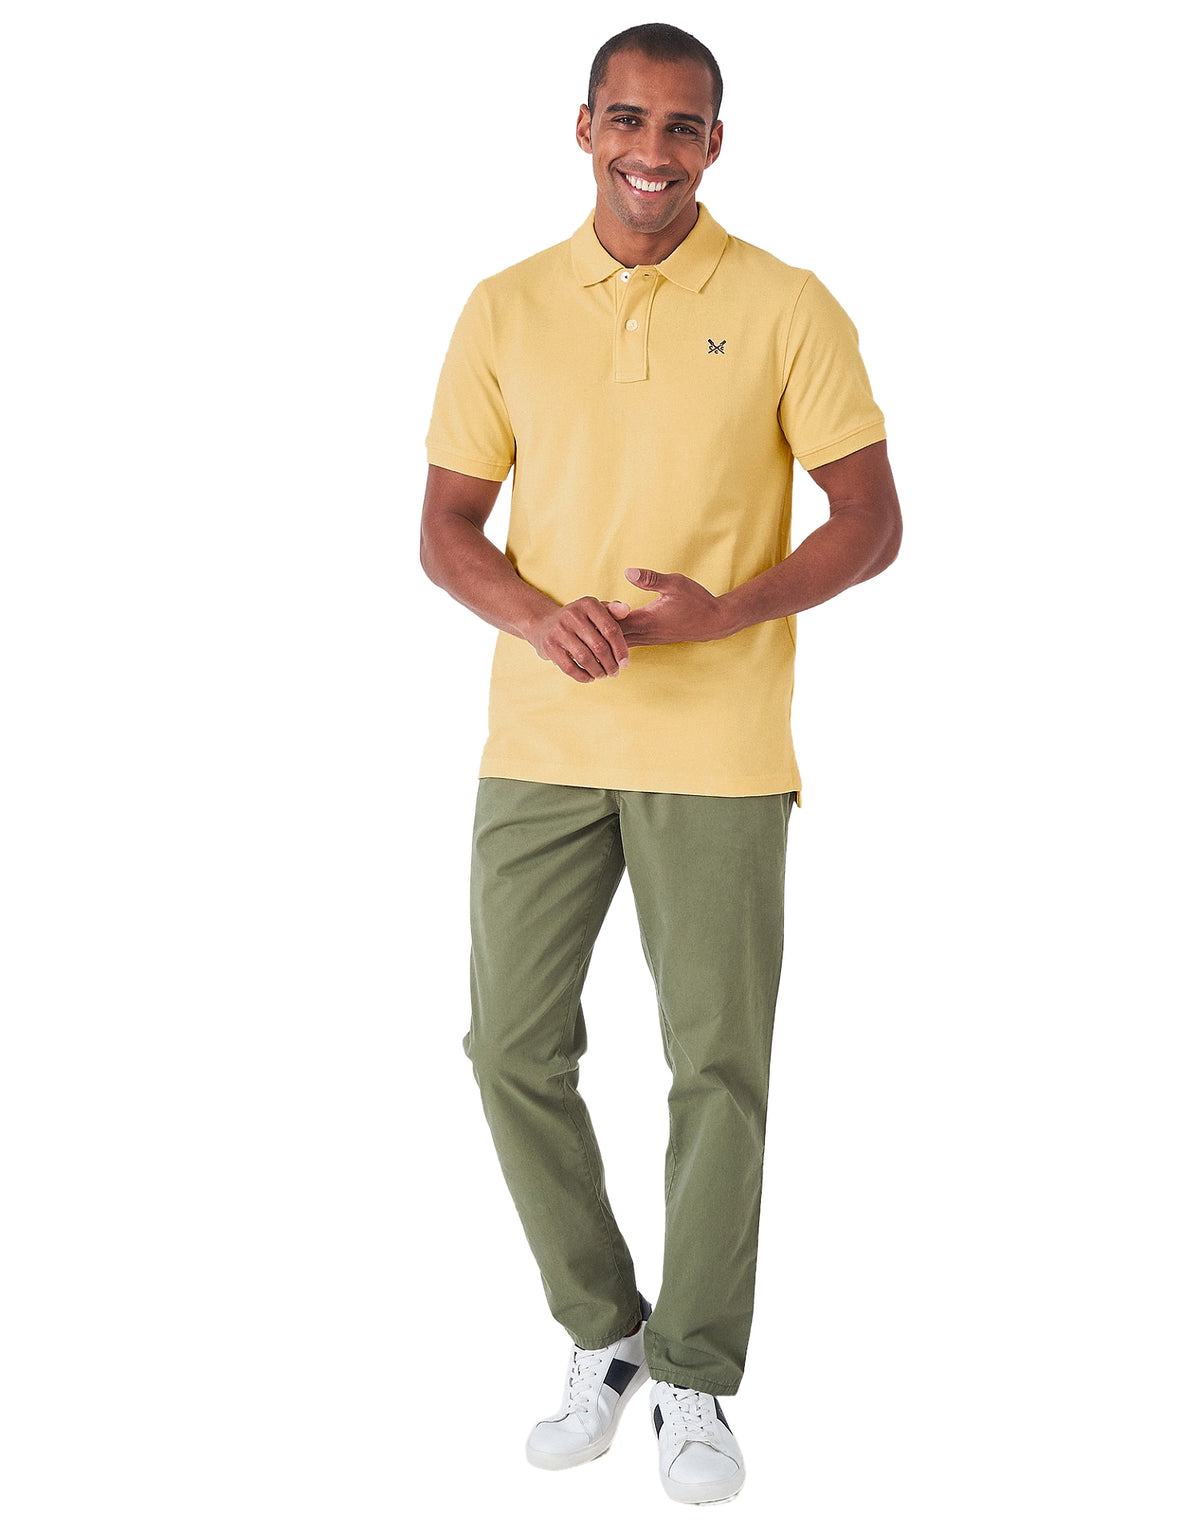 Crew Clothing Mens Pique Polo Shirt 'Classic Pique Polo' - Short Sleeved, 01, Mke002, Golden Haze